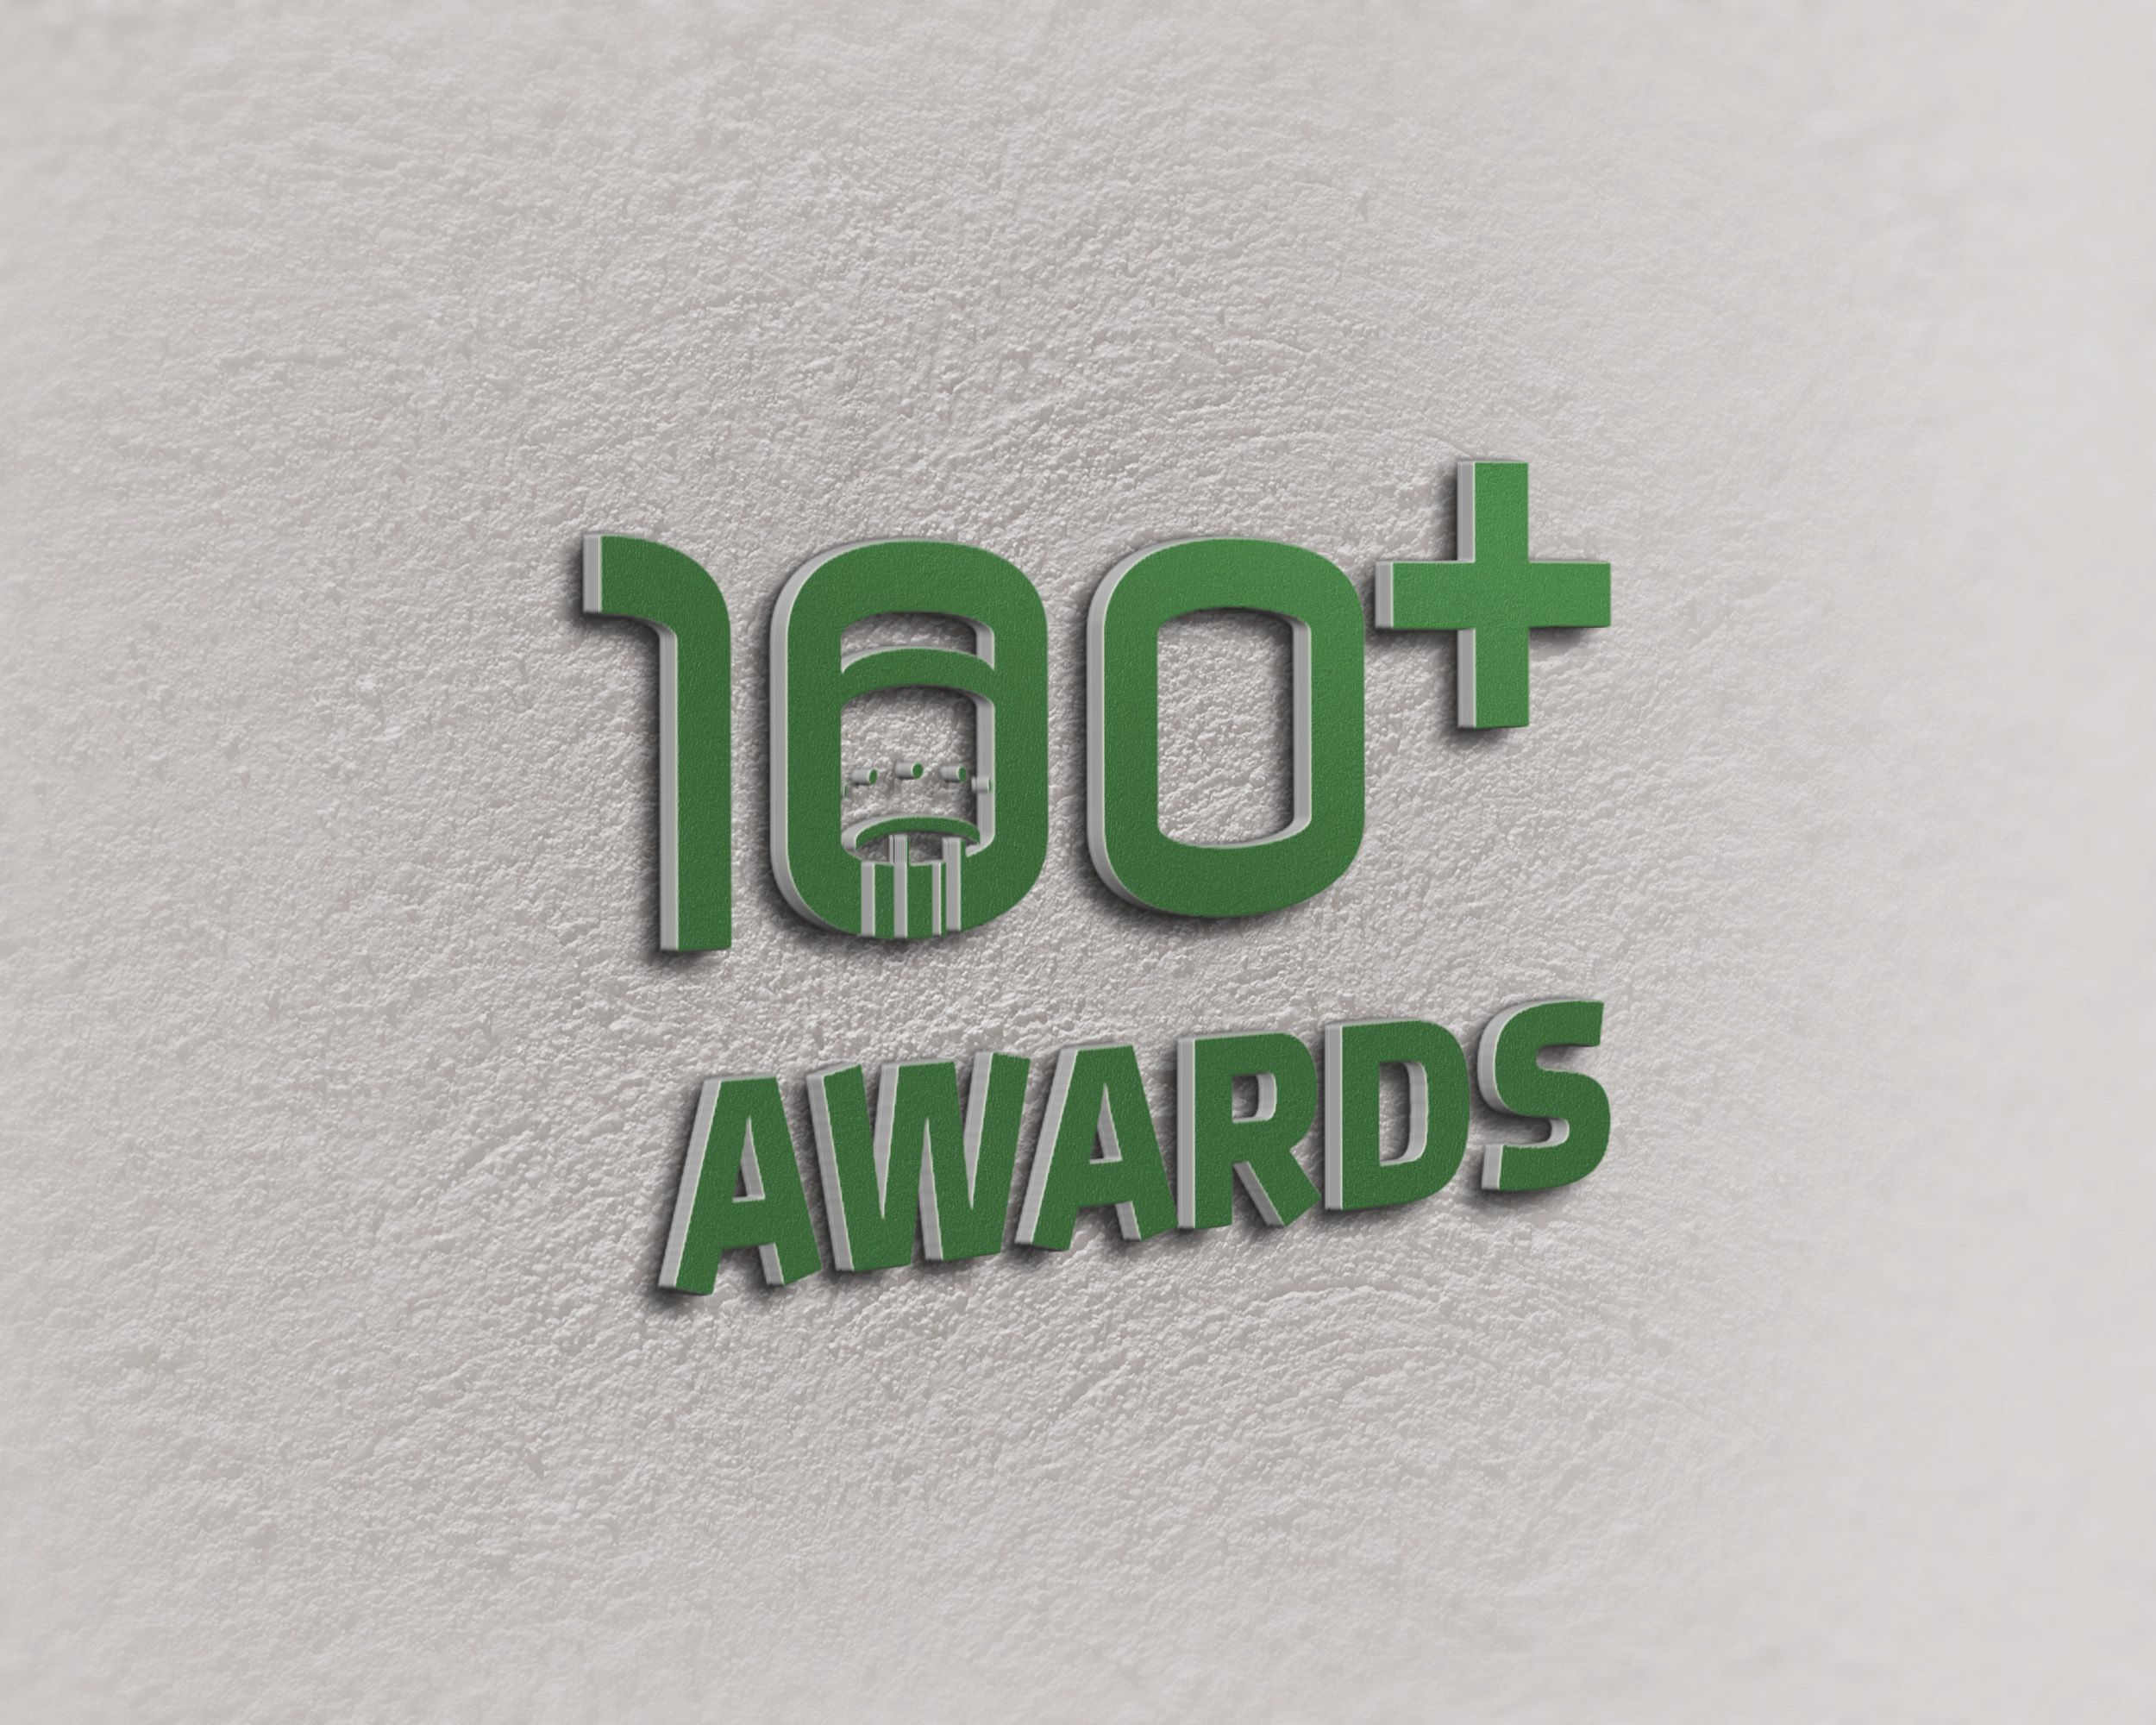 В состав жюри премии 100+ AWARDS вошли звезды мировой архитектуры